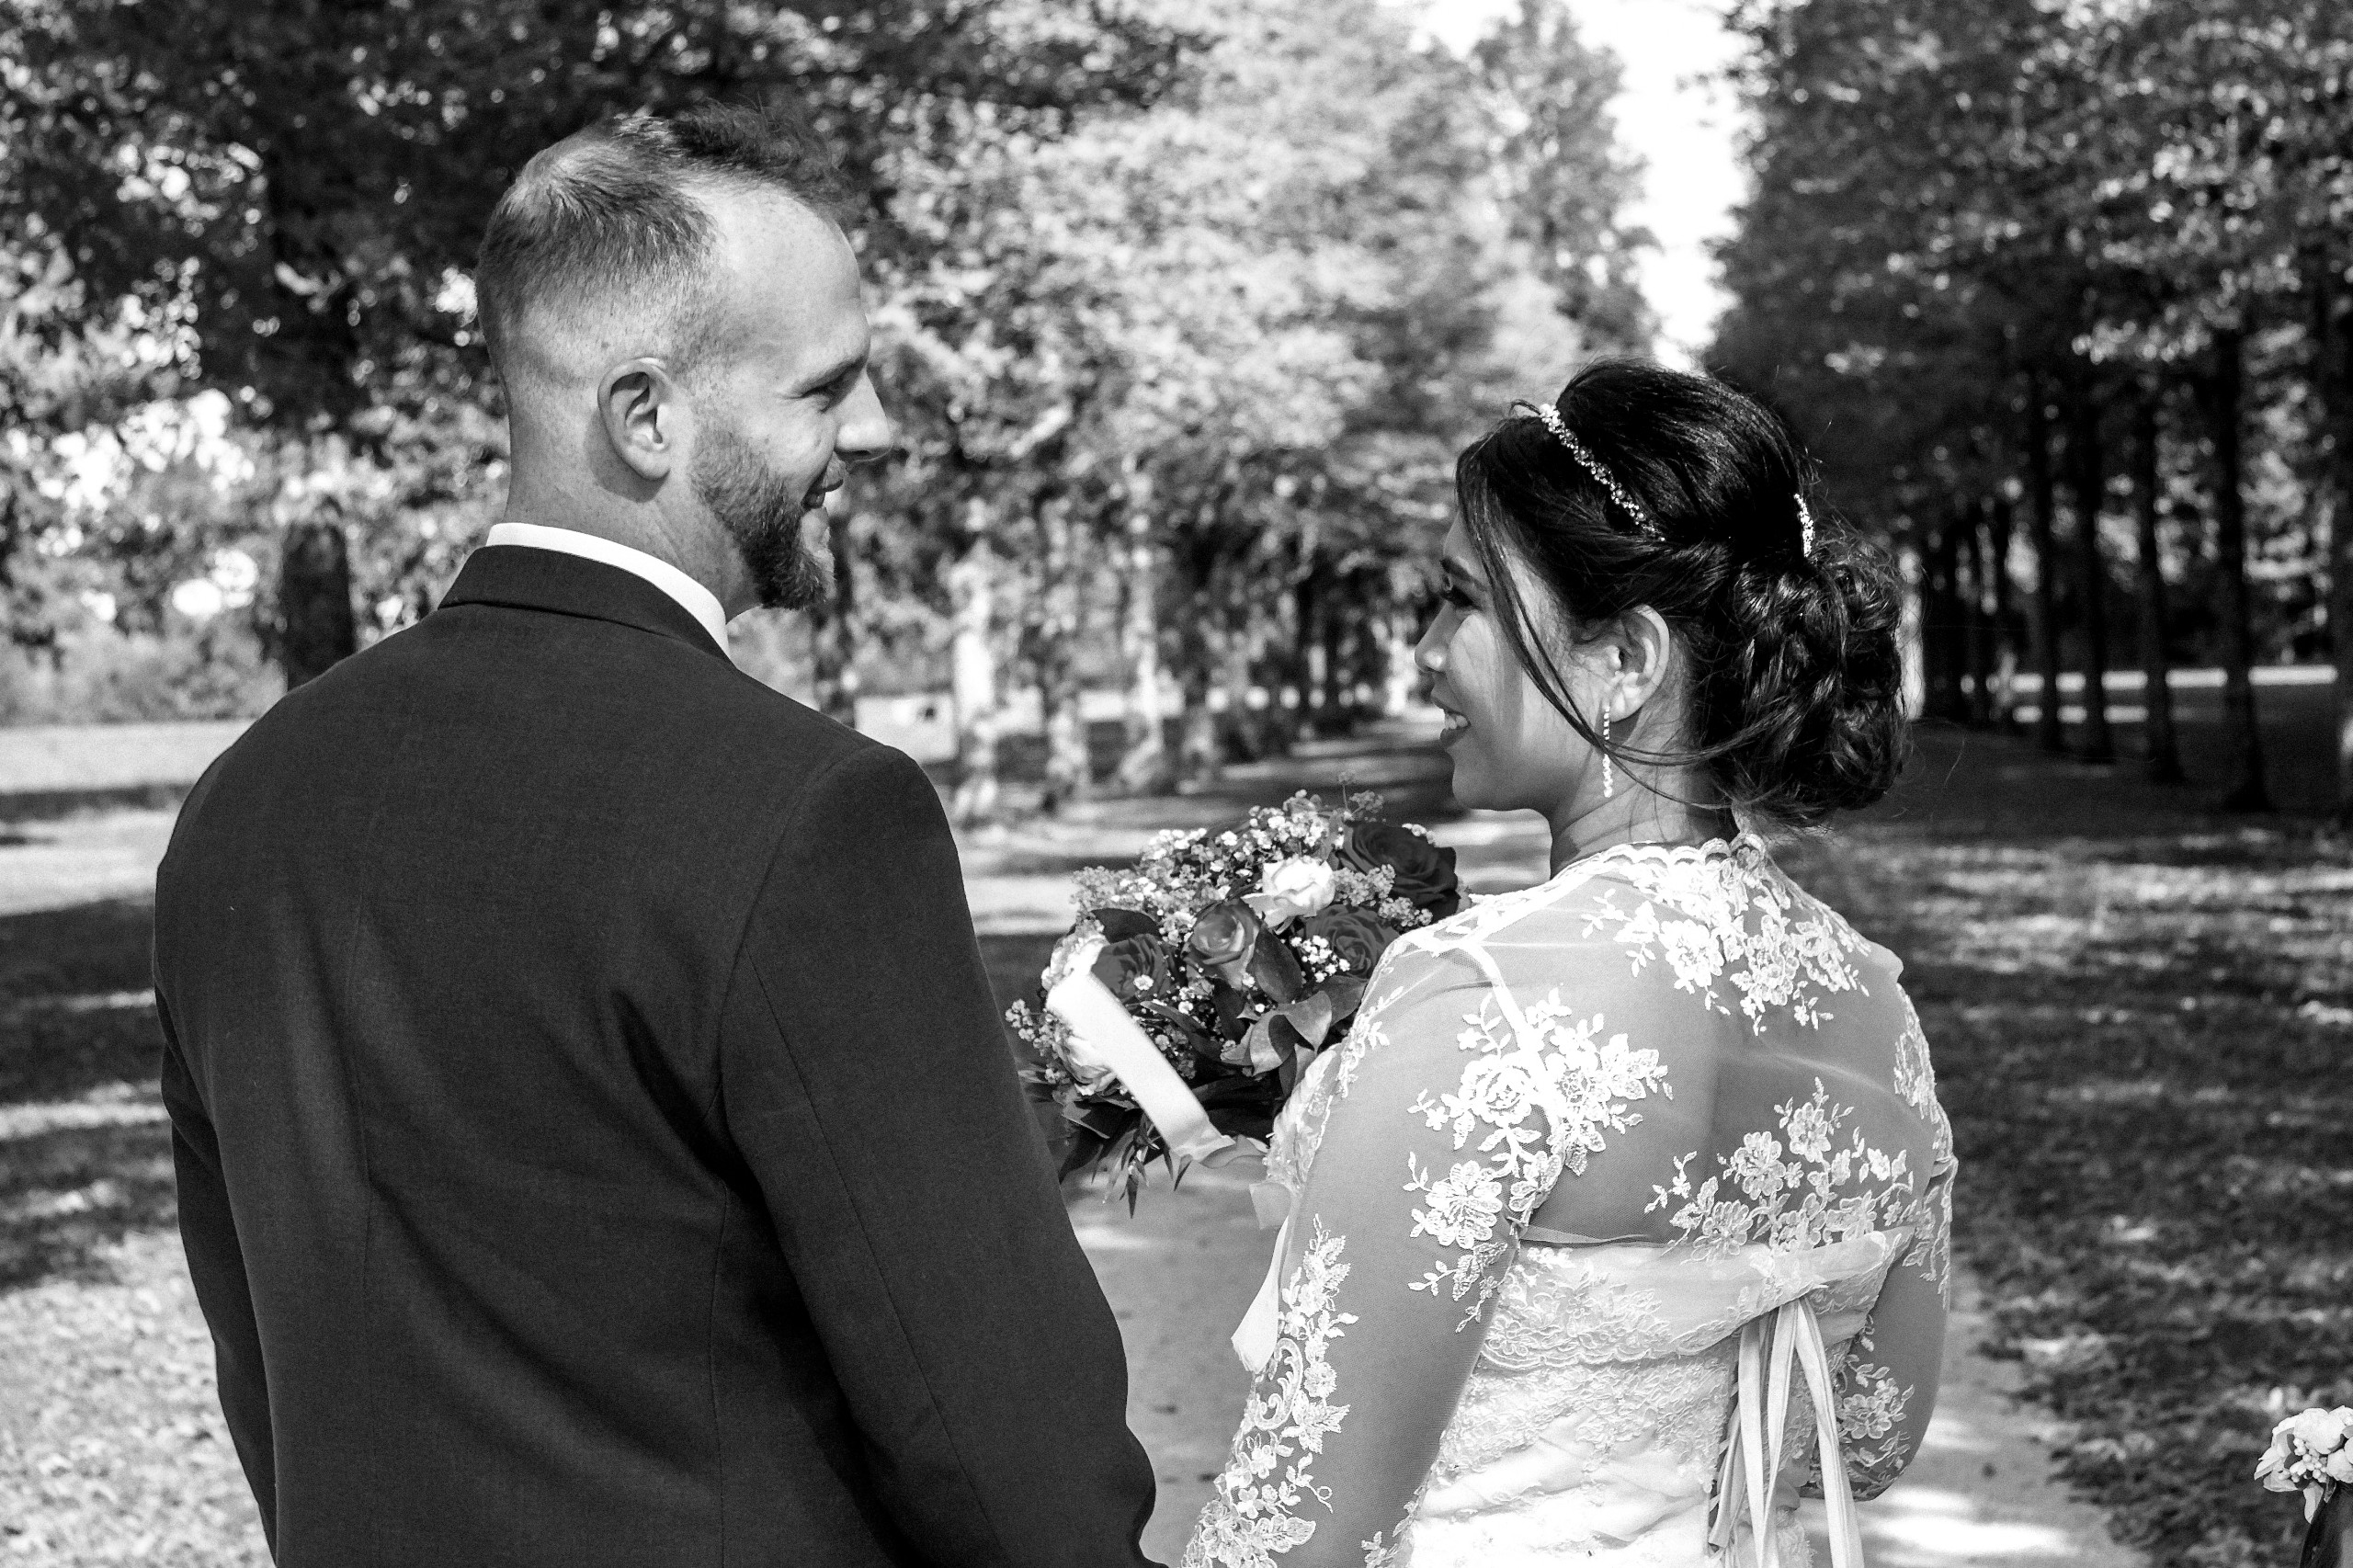 Hochzeitsfotograf im Gro&szlig;raum Pforzheim. Ich schaffe als Fotograf Ihrer Hochzeit emotionale, preiswerte Fotografie, bereits ab 280 &euro;